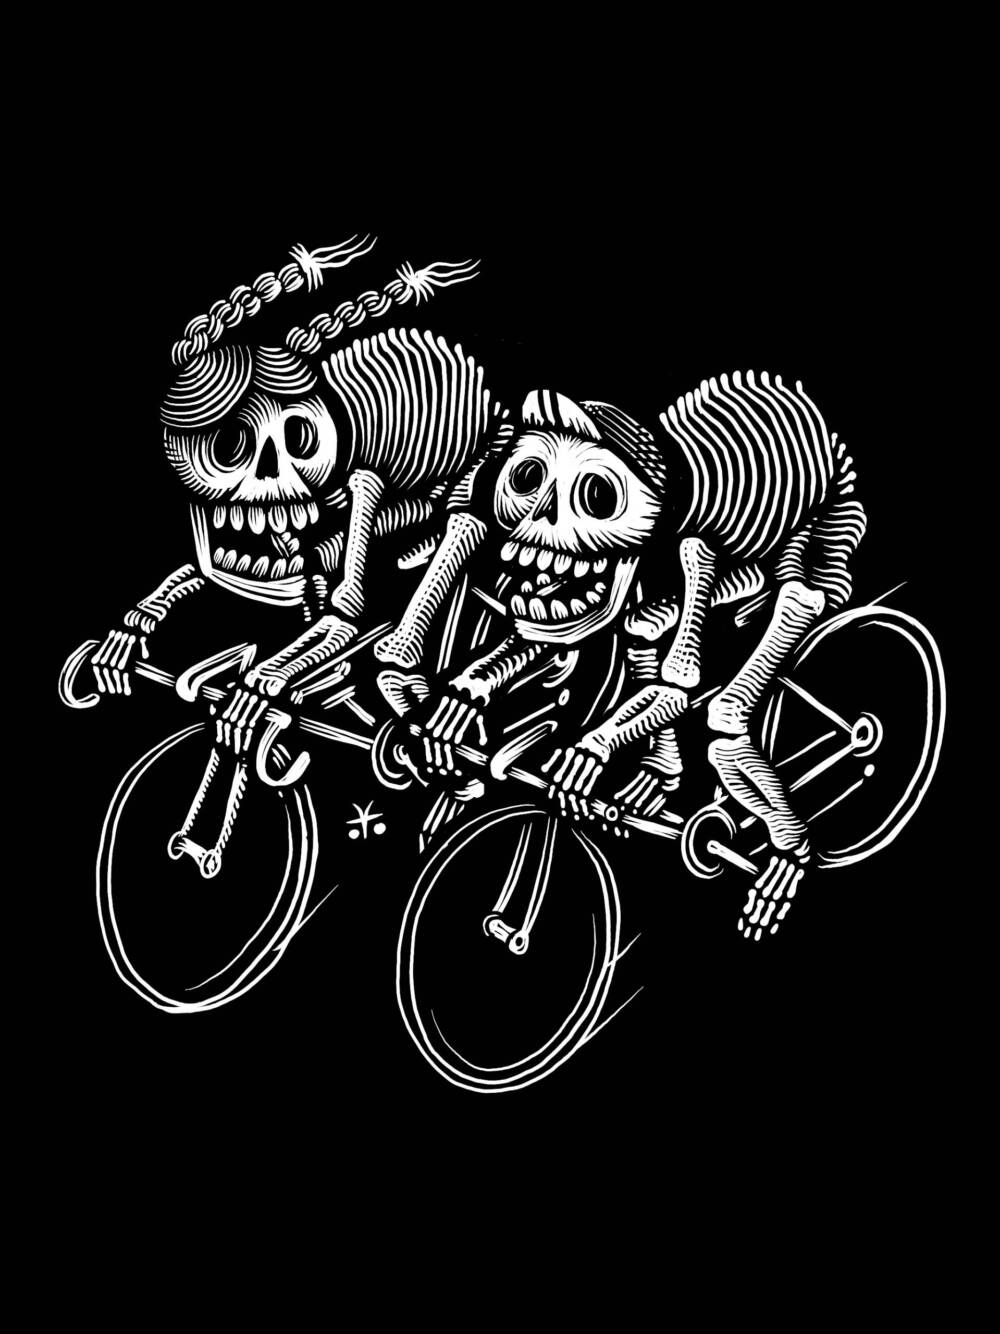 Bike art by Vic Tello